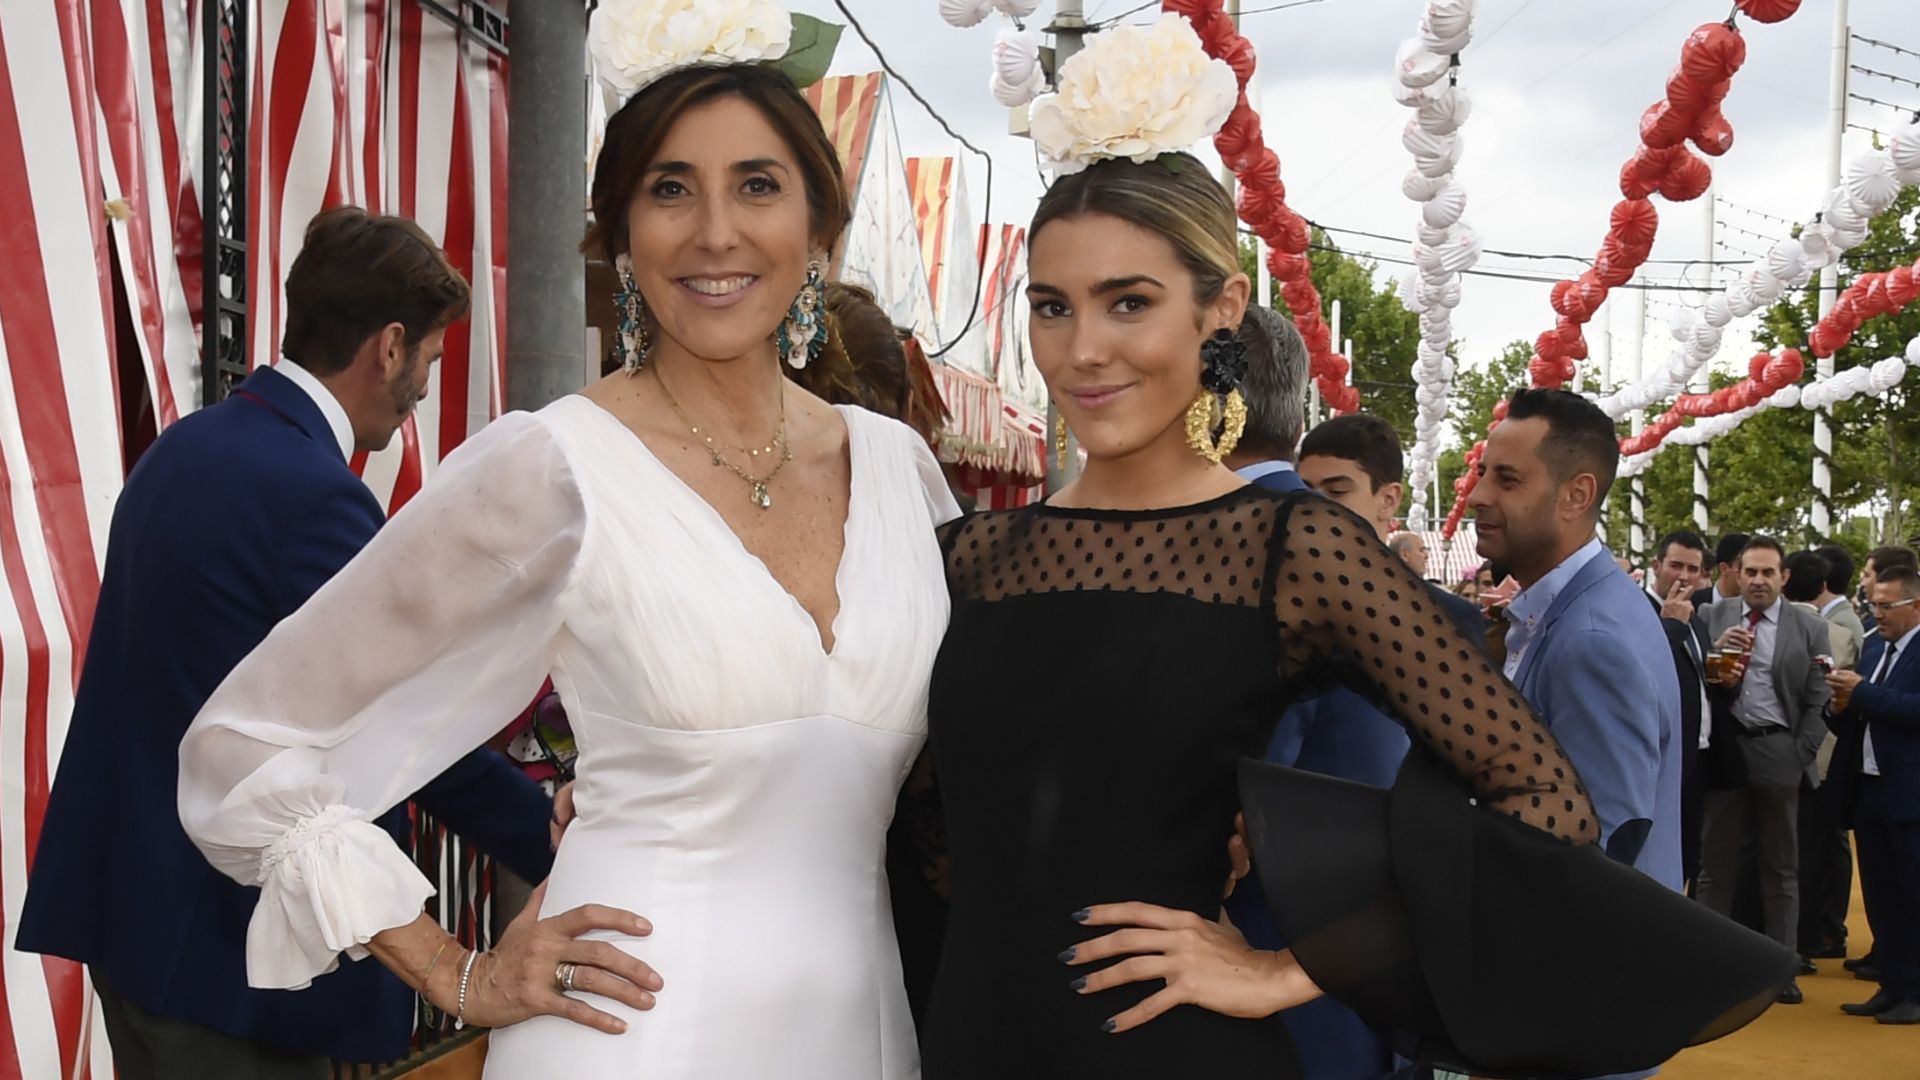 Paz Padilla y Anna Ferrer compiten en estilo con sus vestidos de 'gitana' en tonos opuestos